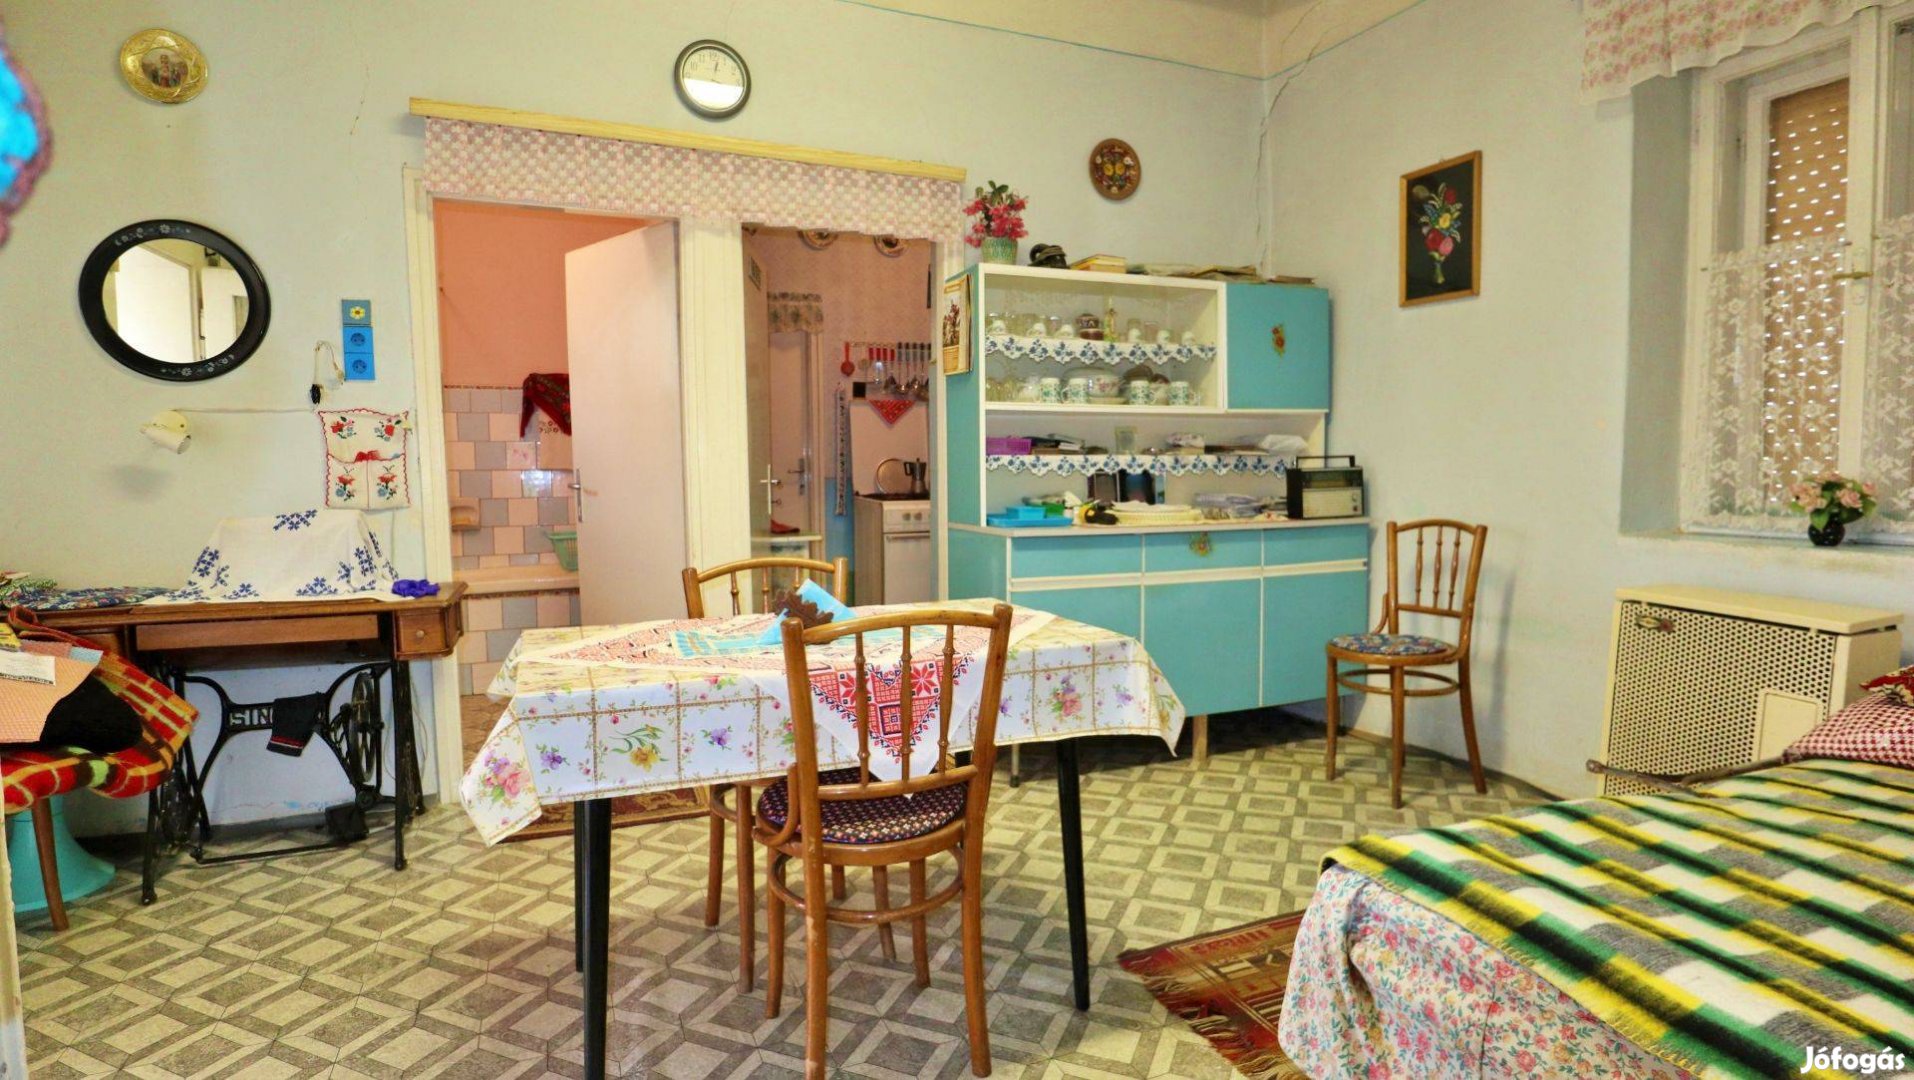 Bodonyban, Csendes, aszfaltozott utcában 103 éves családi ház eladó